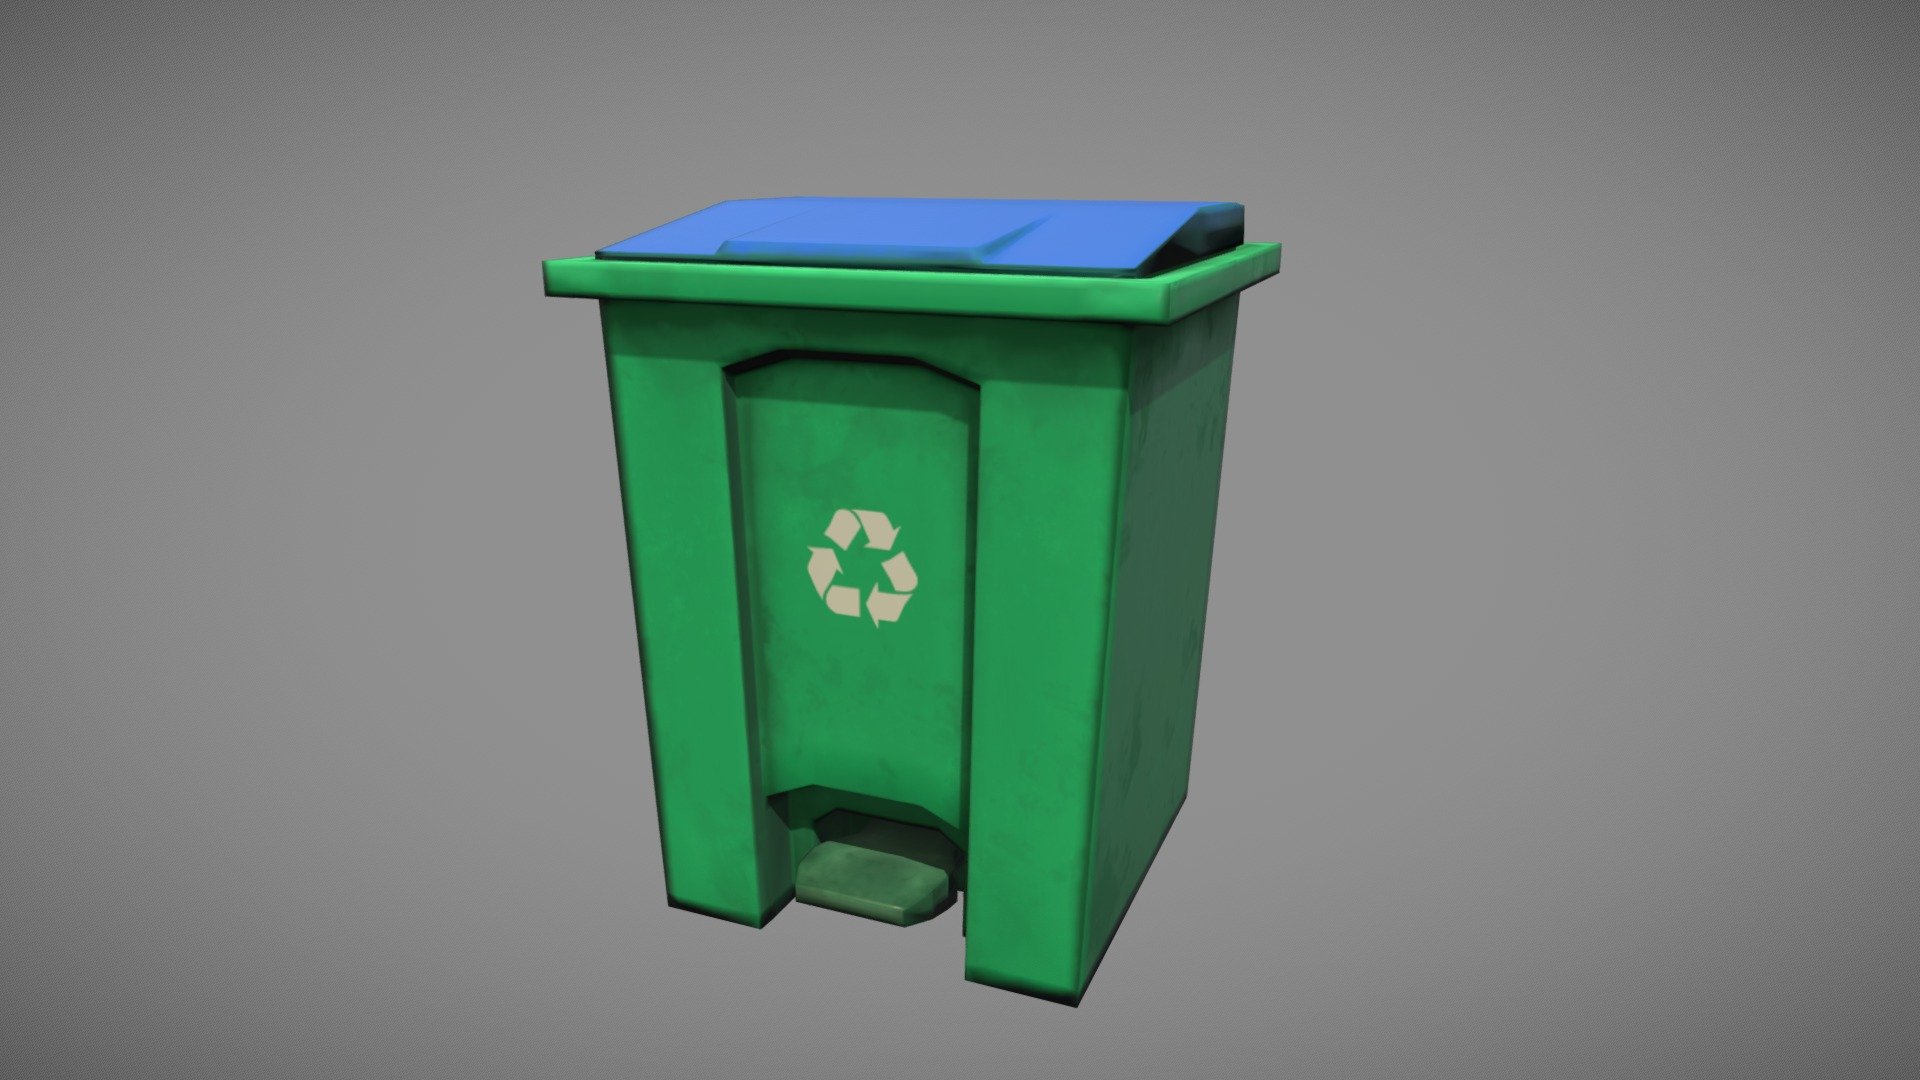 Trash Bin 3d Model Low Poly Asset for game 3d model